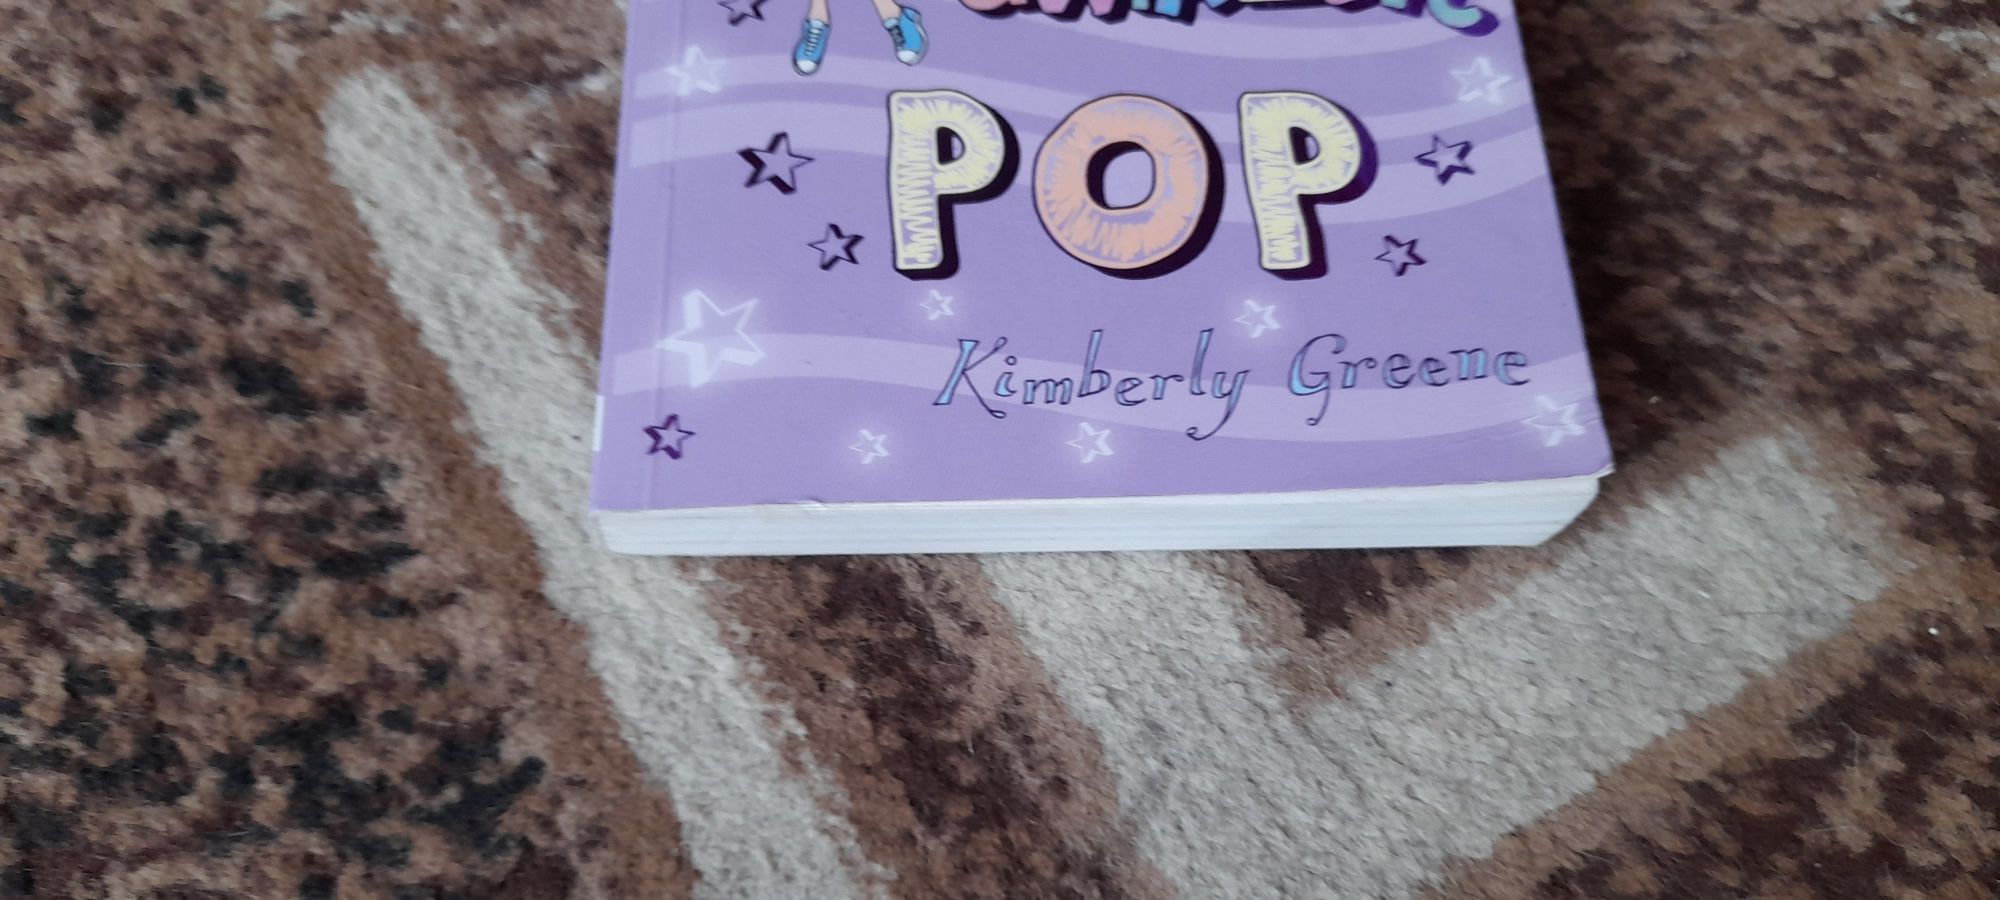 A ja nie jestem gwiazdą POP - Kimberly Greene